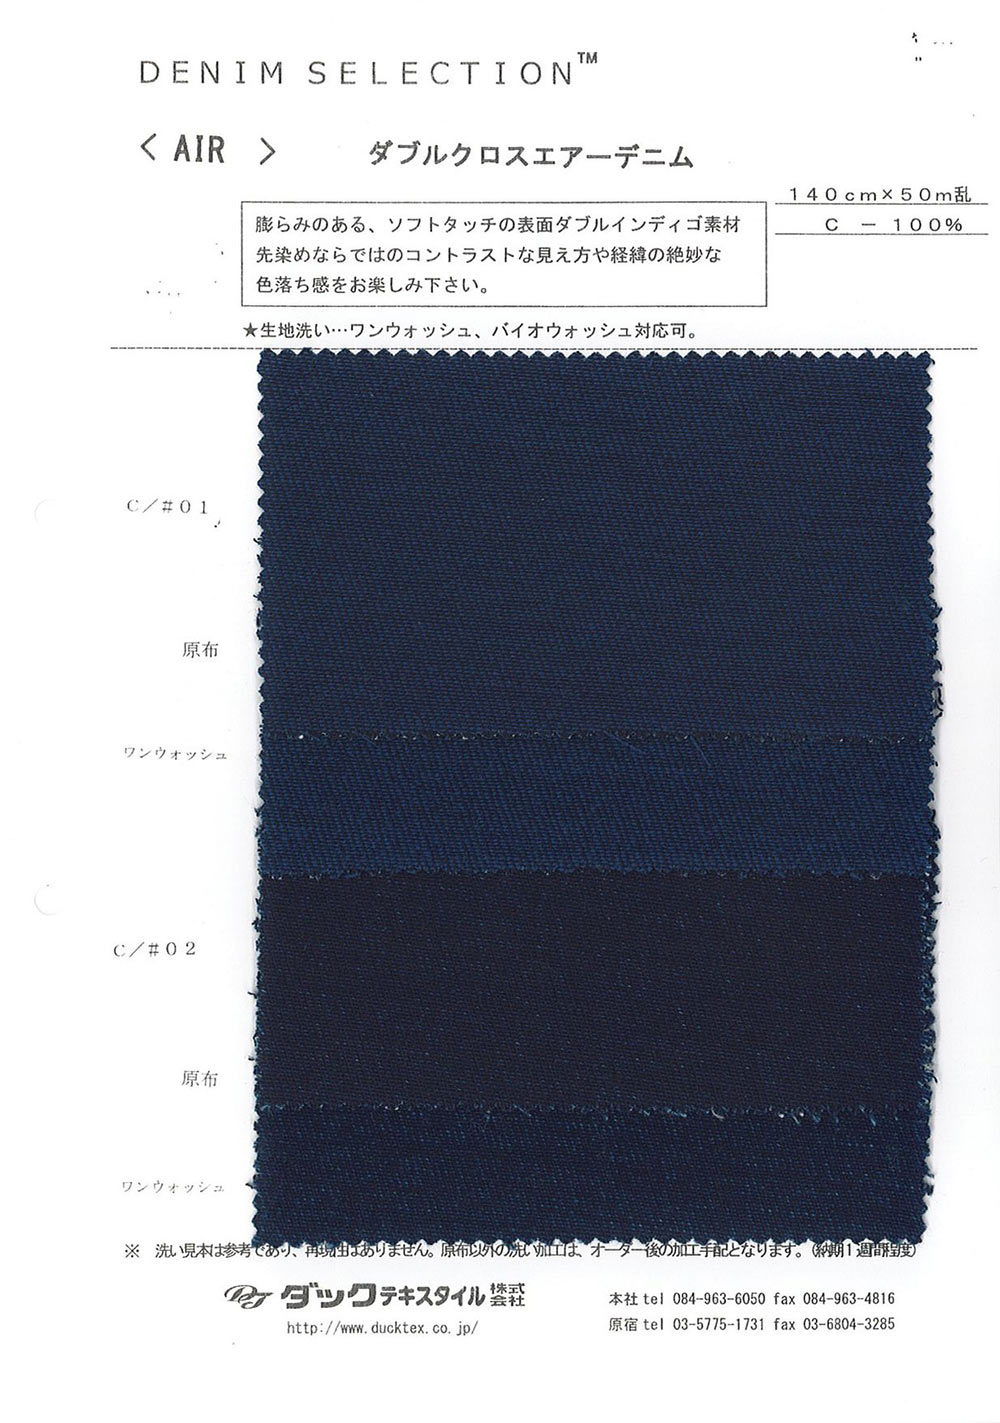 AIR [Fabrica Textil] DUCK TEXTILE